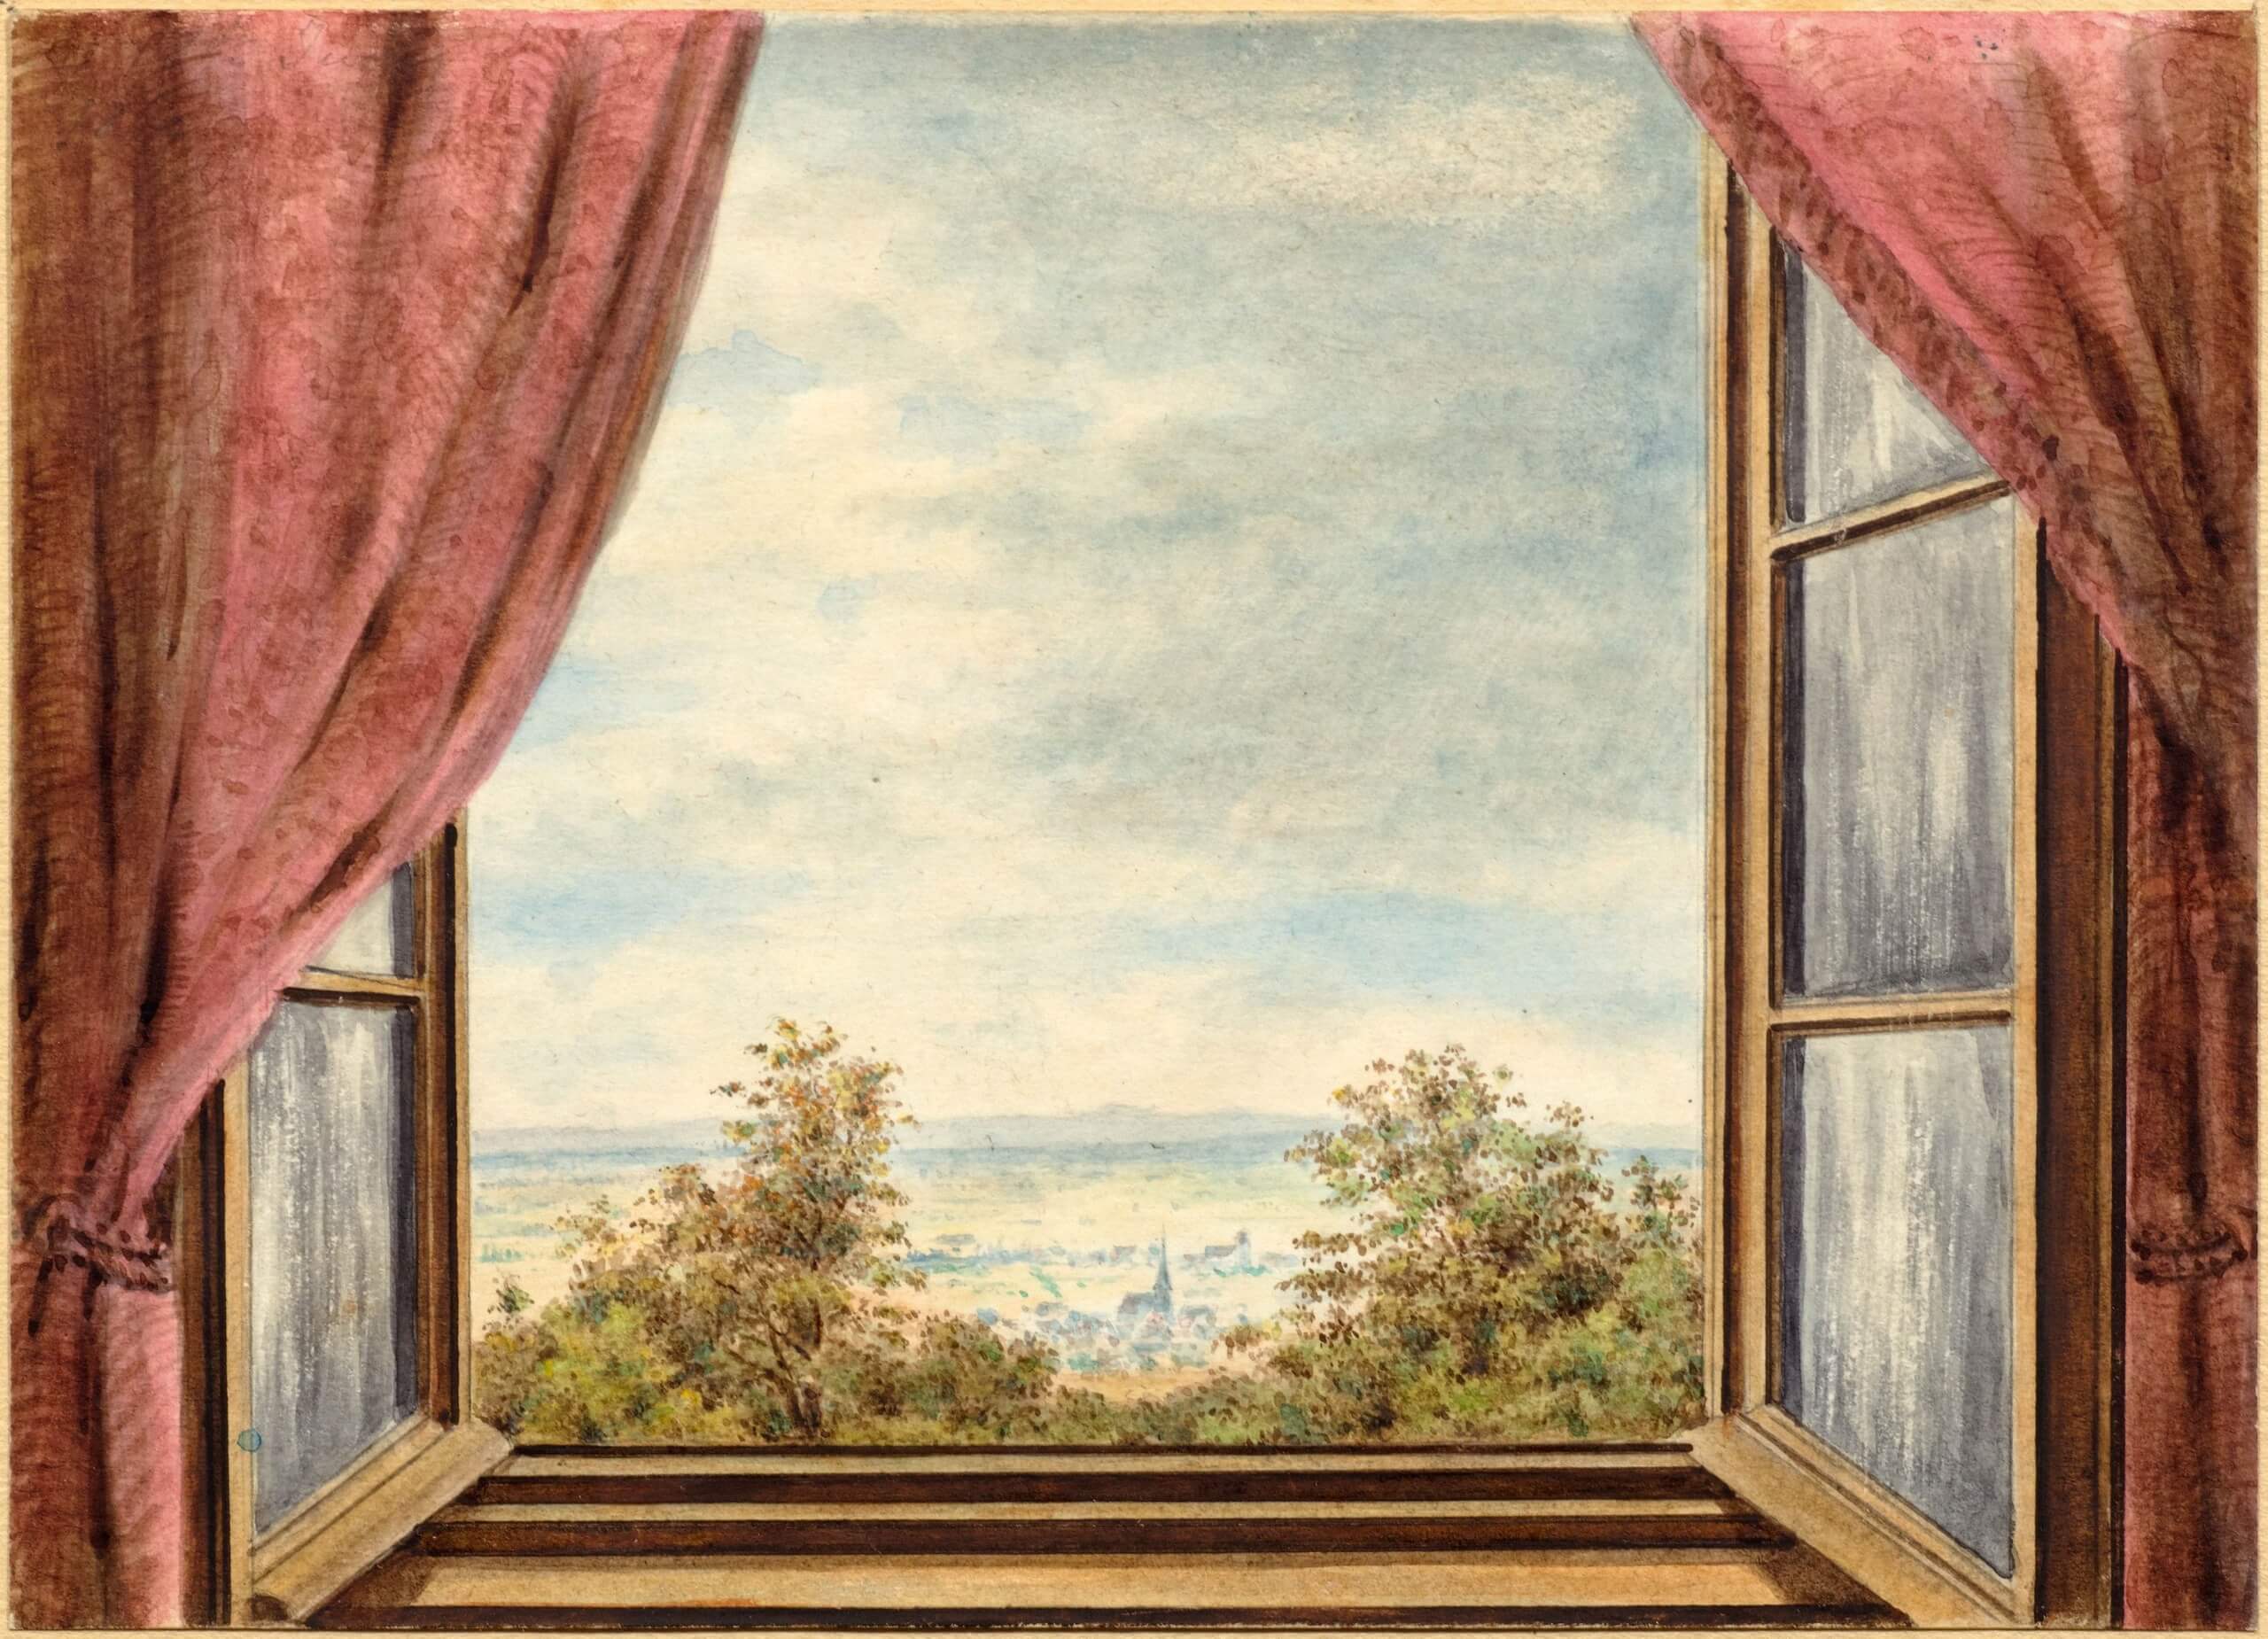 Aquarell von Christian Morgenstern "Blick aus dem Fenster in eine ländliche Gegend hinein"